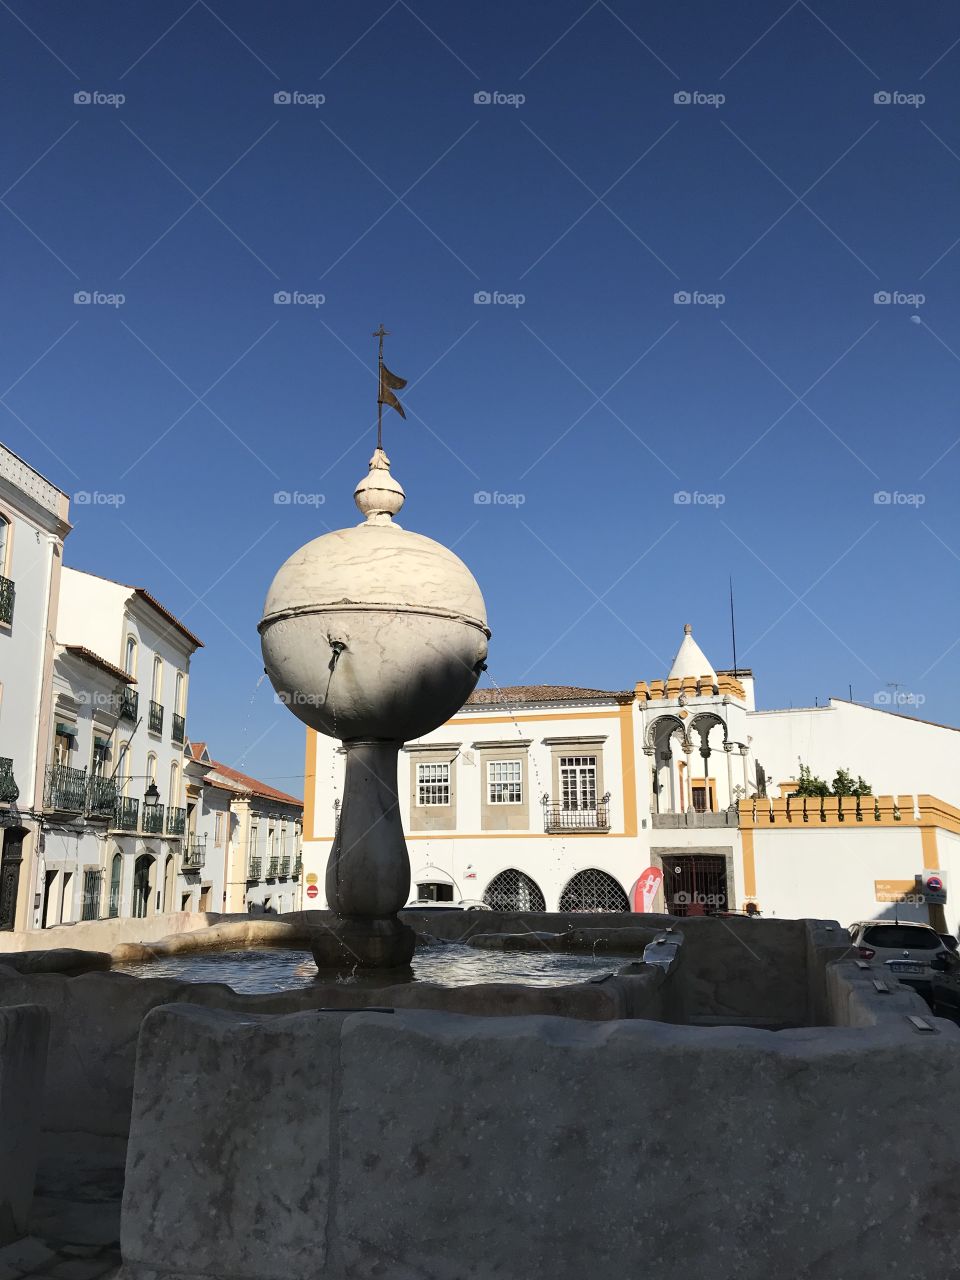 Fountain of the Porta da Moura - Évora (Portugal)